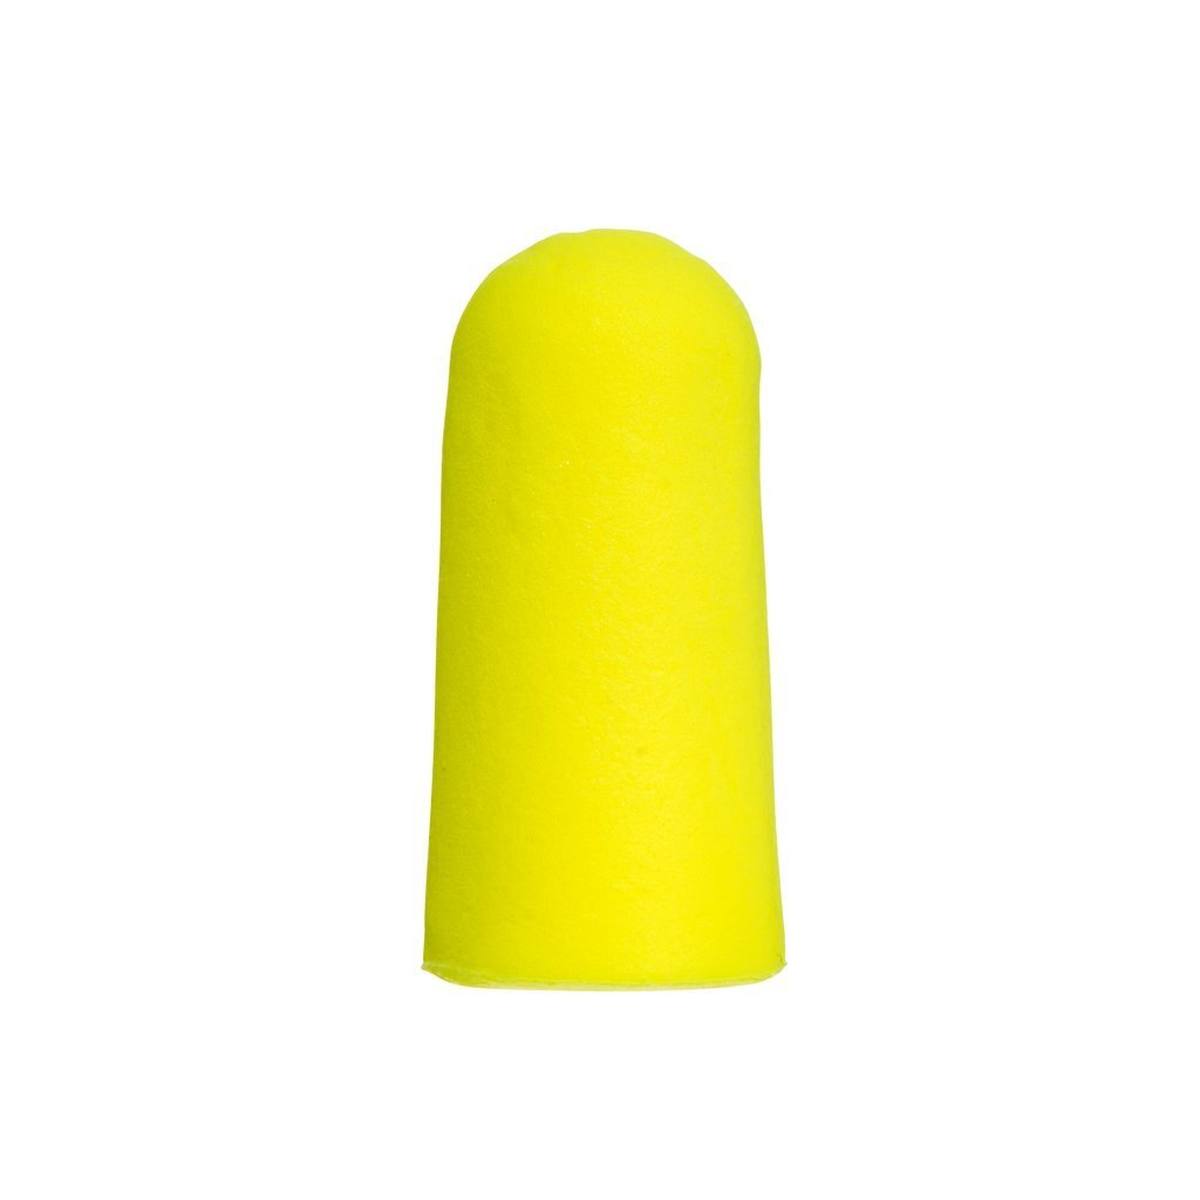 3M E-A-R Neones Amarillos Blandos, poliuretano, flexibles y cómodos, por pares en bolsa de polietileno, amarillo neón, SNR=36 dB, ES01001